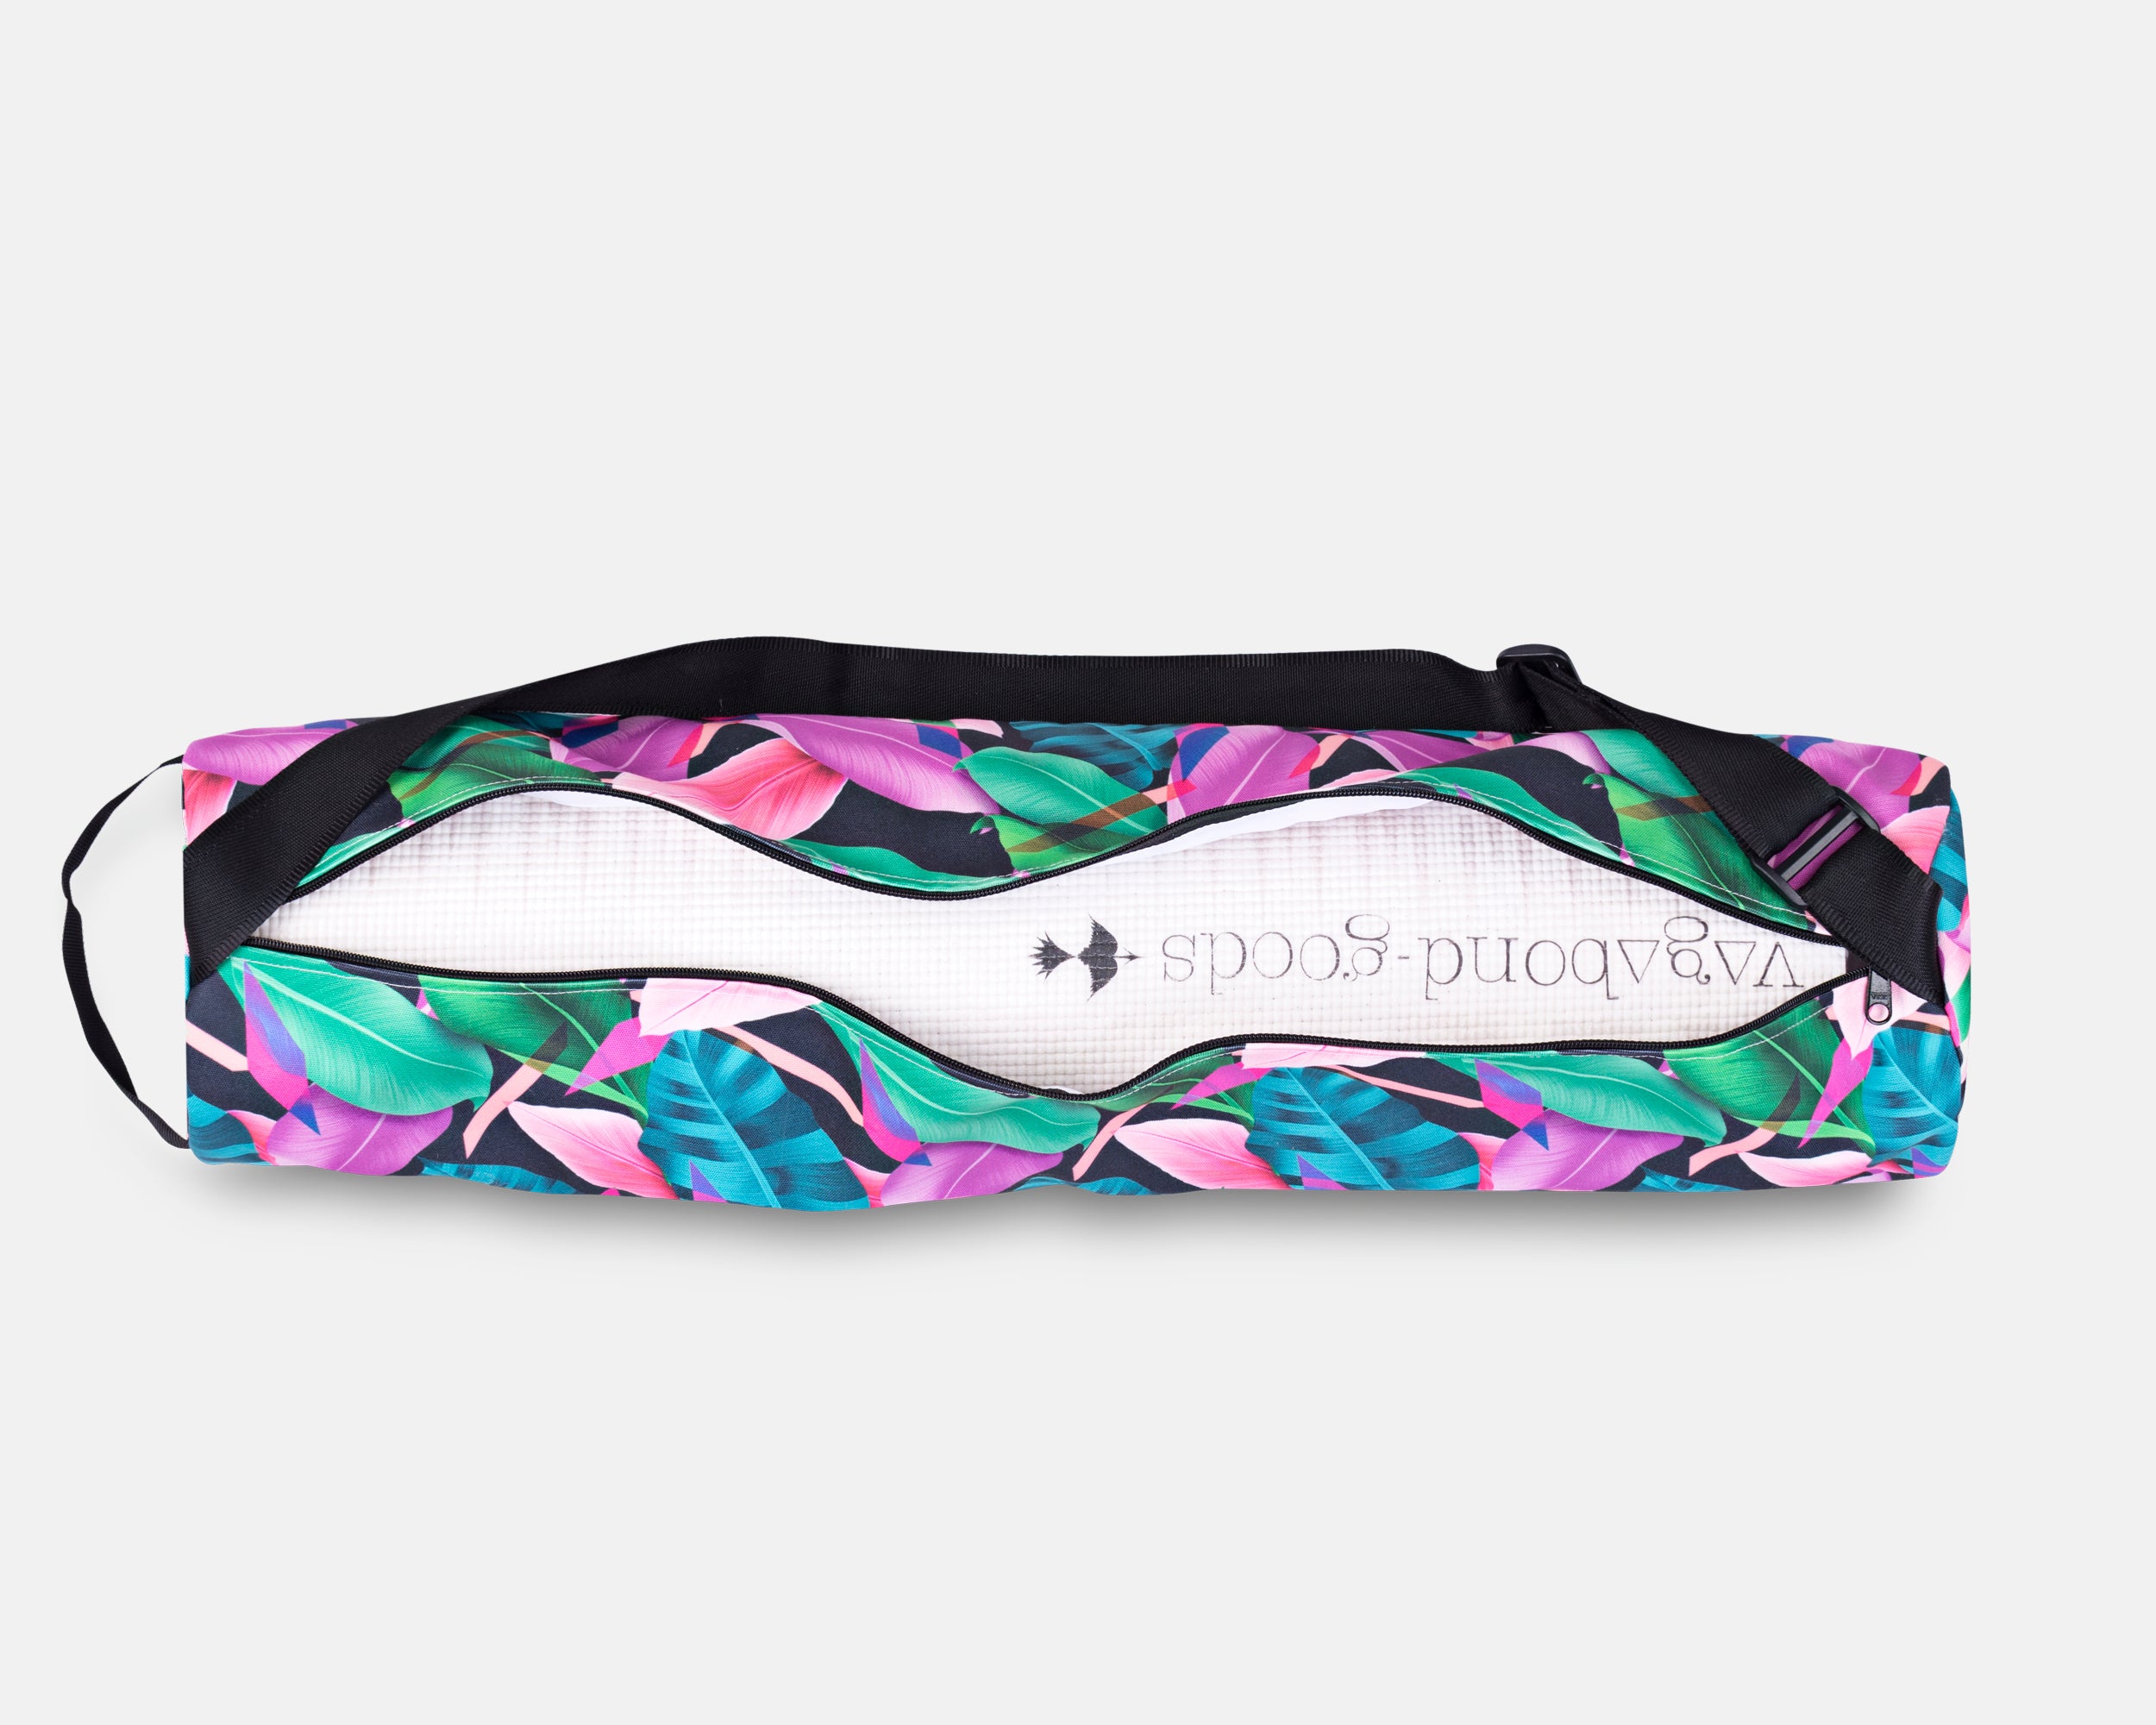 MYGA Yoga Mat Bag – Diamond Parrot Accessory Emporium